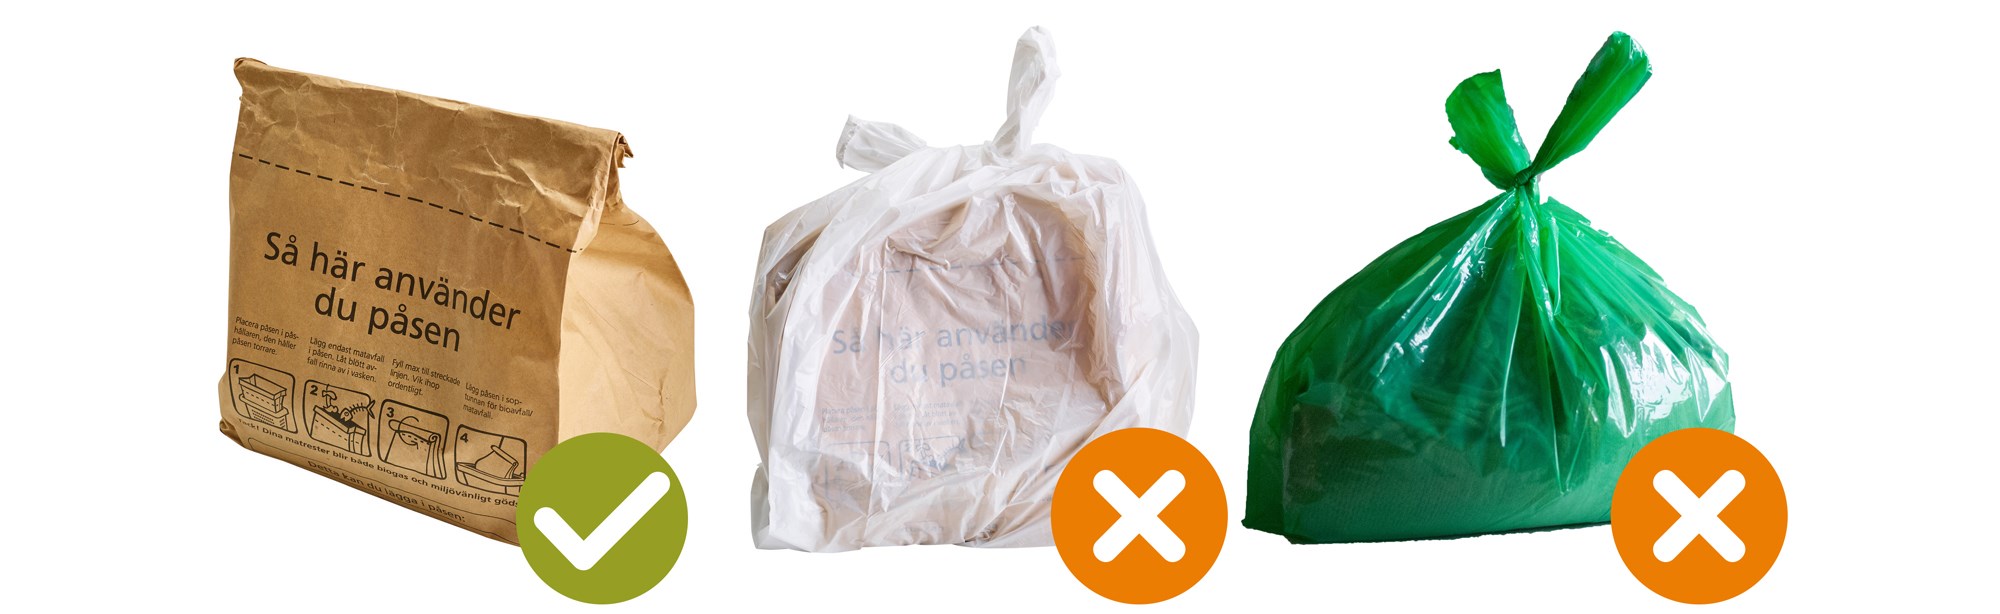 papperspåse för matavfall och soppåsar för annat avfall